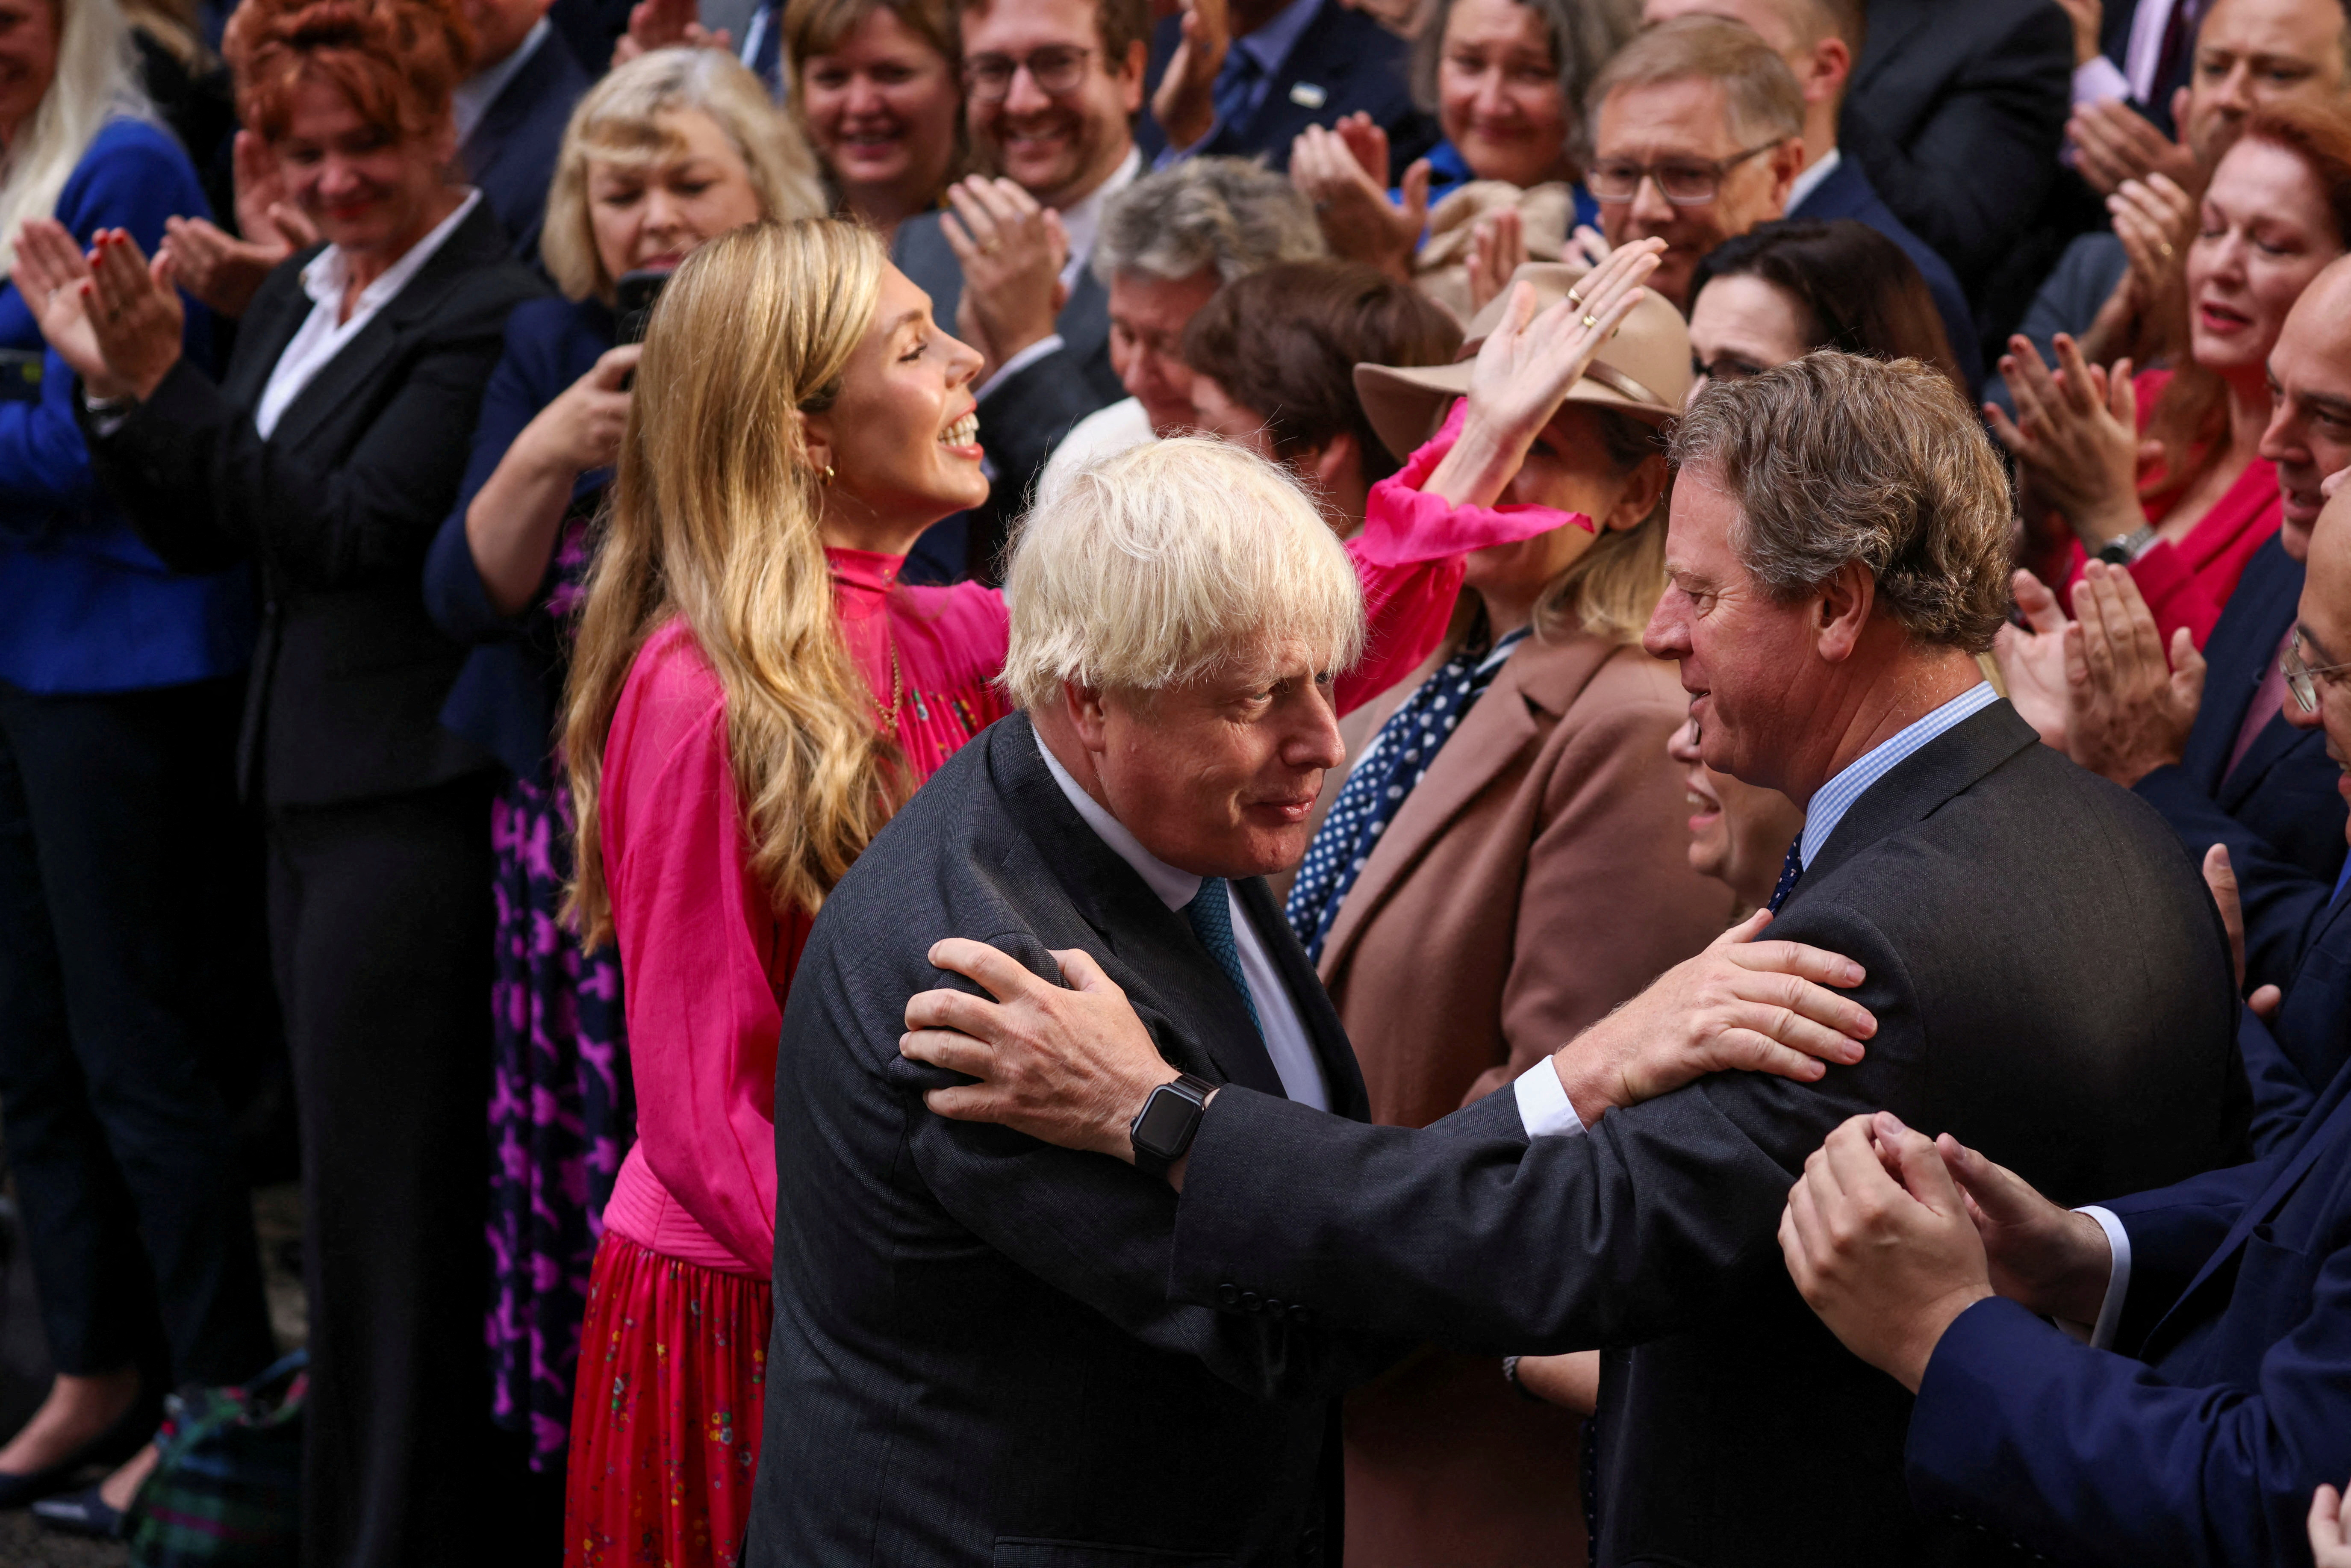 El primer ministro británico saliente, Boris Johnson, con su esposa Carrie Johnson, saluda a la gente después de pronunciar un discurso en su último día en el cargo, en las afueras de Downing Street (REUTERS/Henry Nicholls)